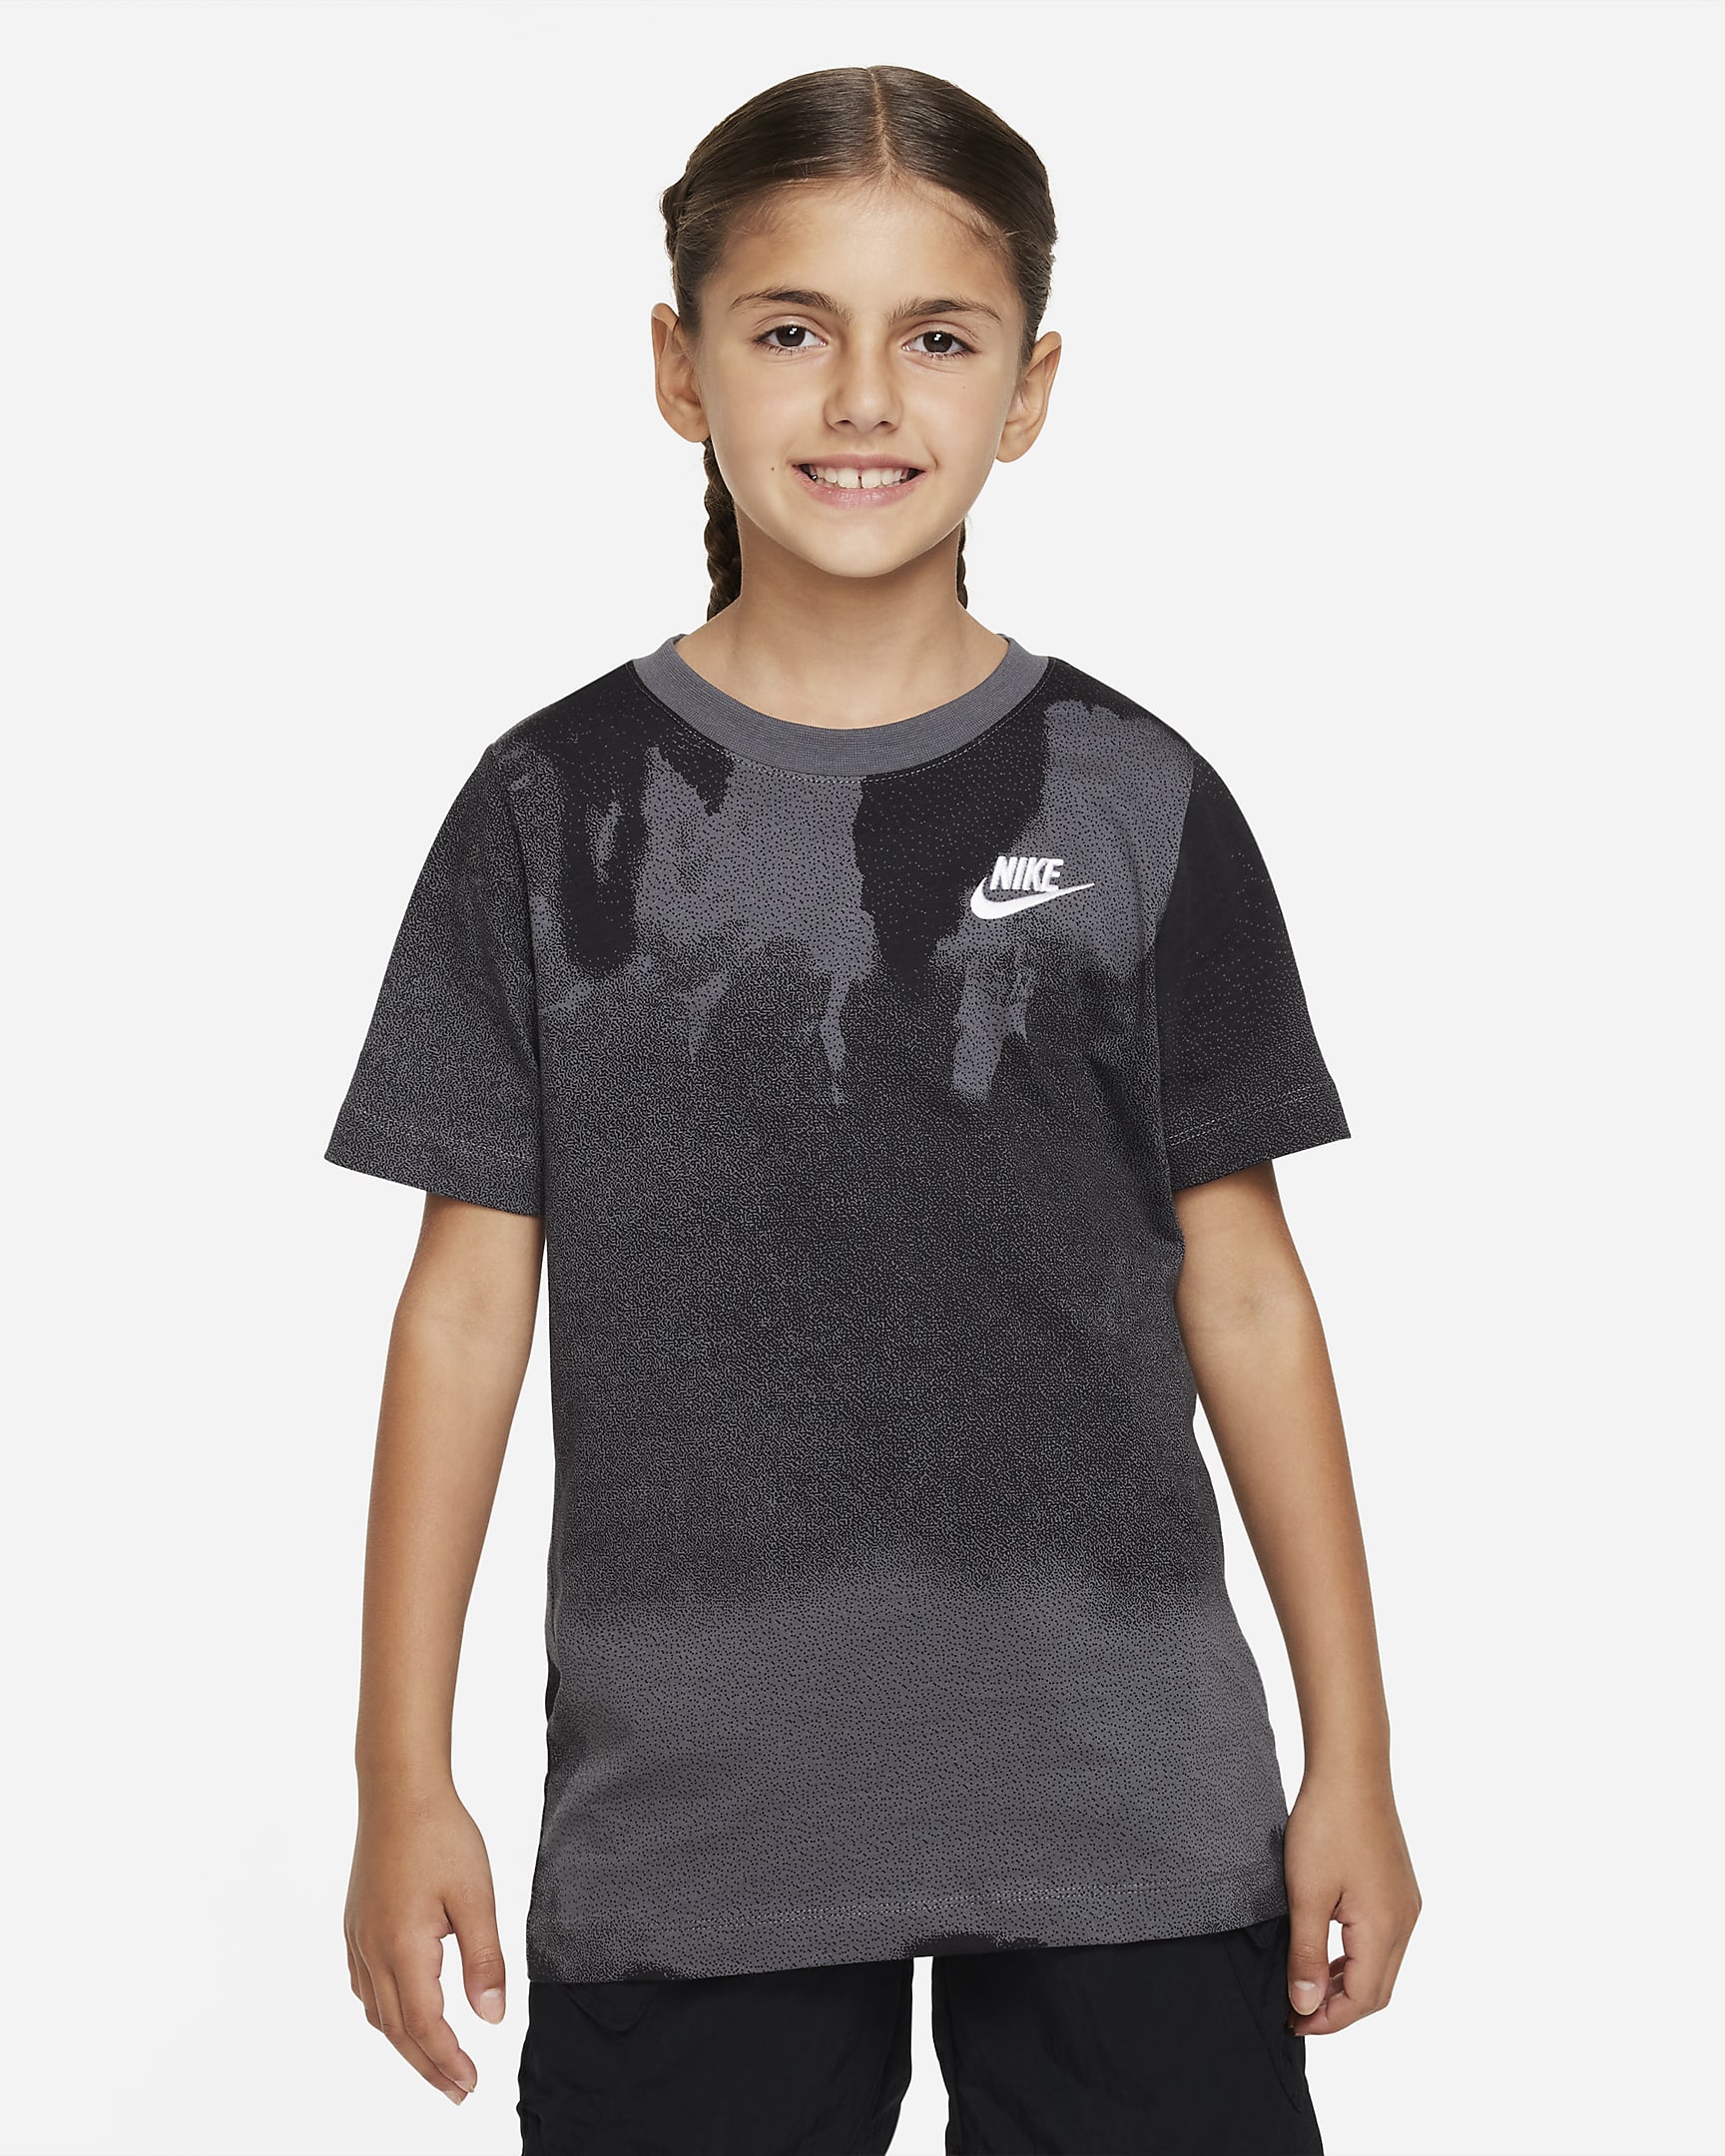 Nike Sportswear Older Kids' T-Shirt. Nike IE